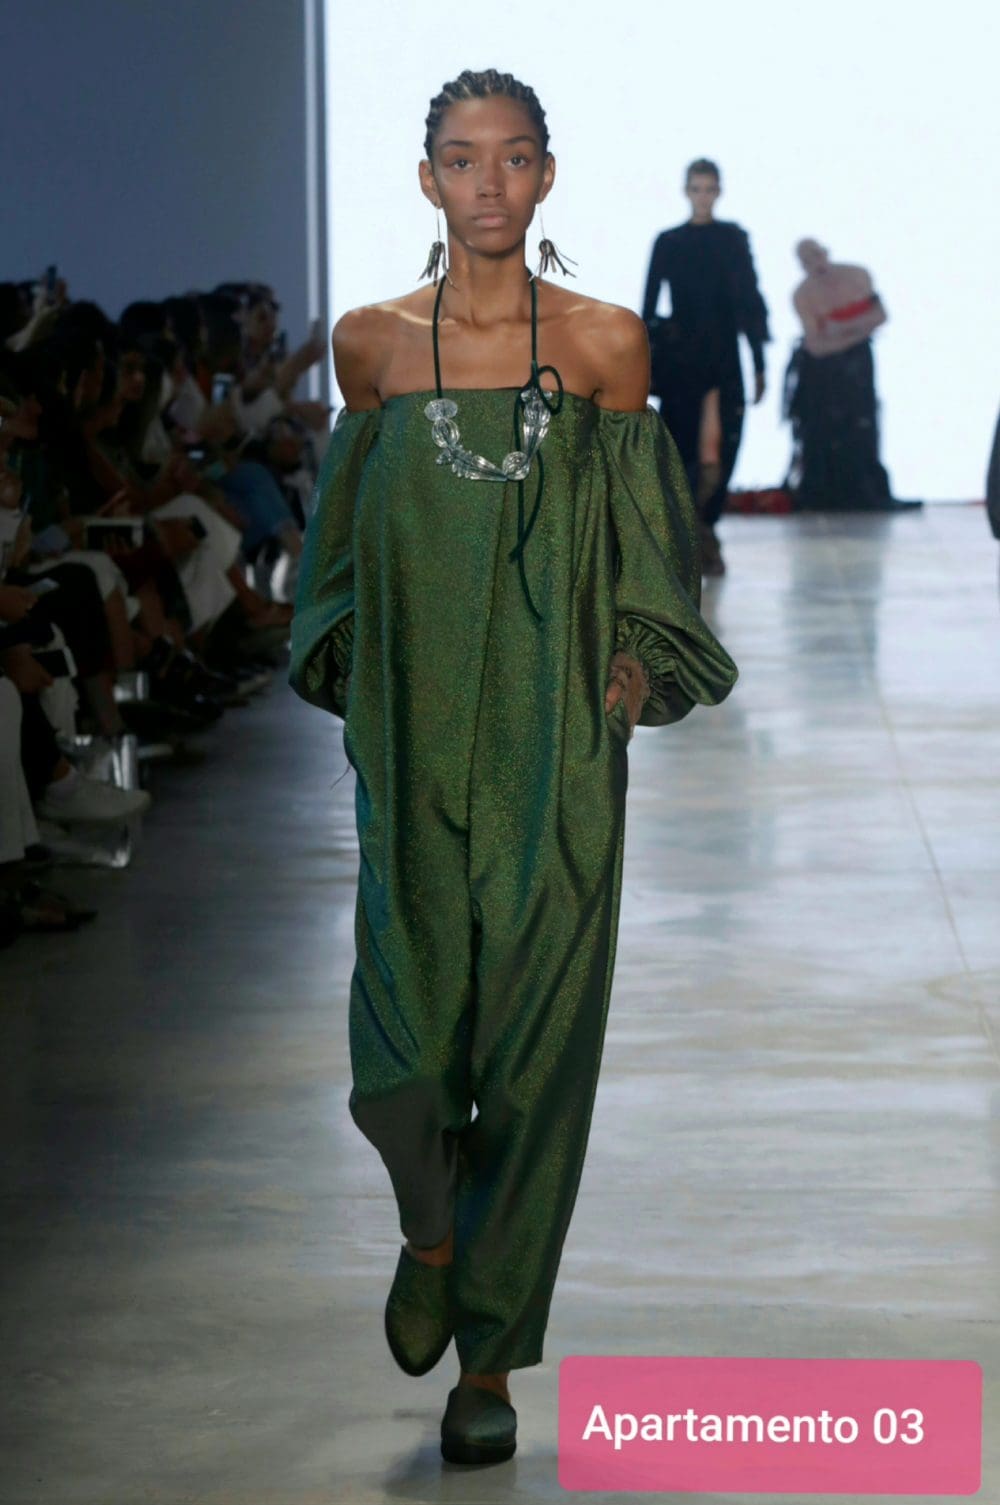 ombros em evidência - moda - spfw - look - macacão verde bufante